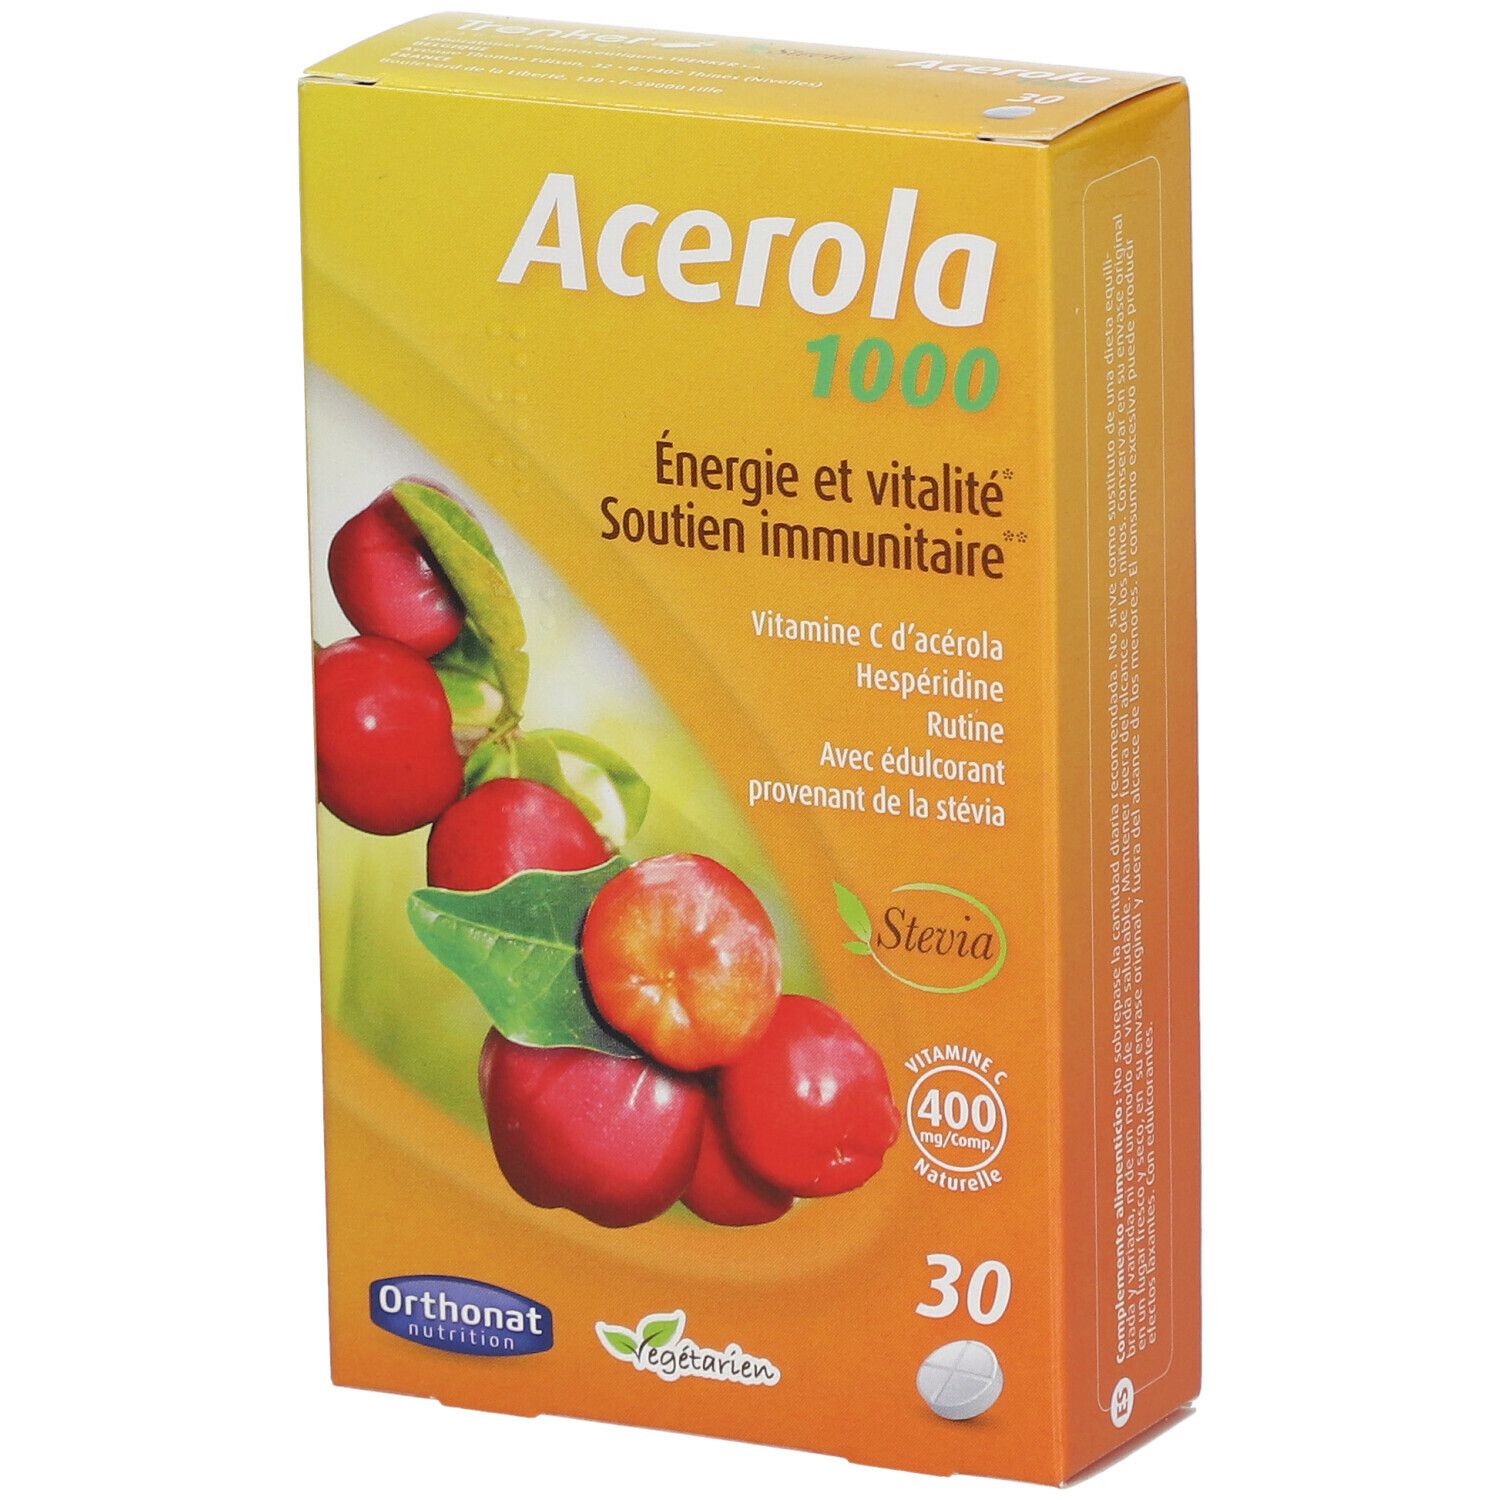 Orthonat Acerola 1000 mg